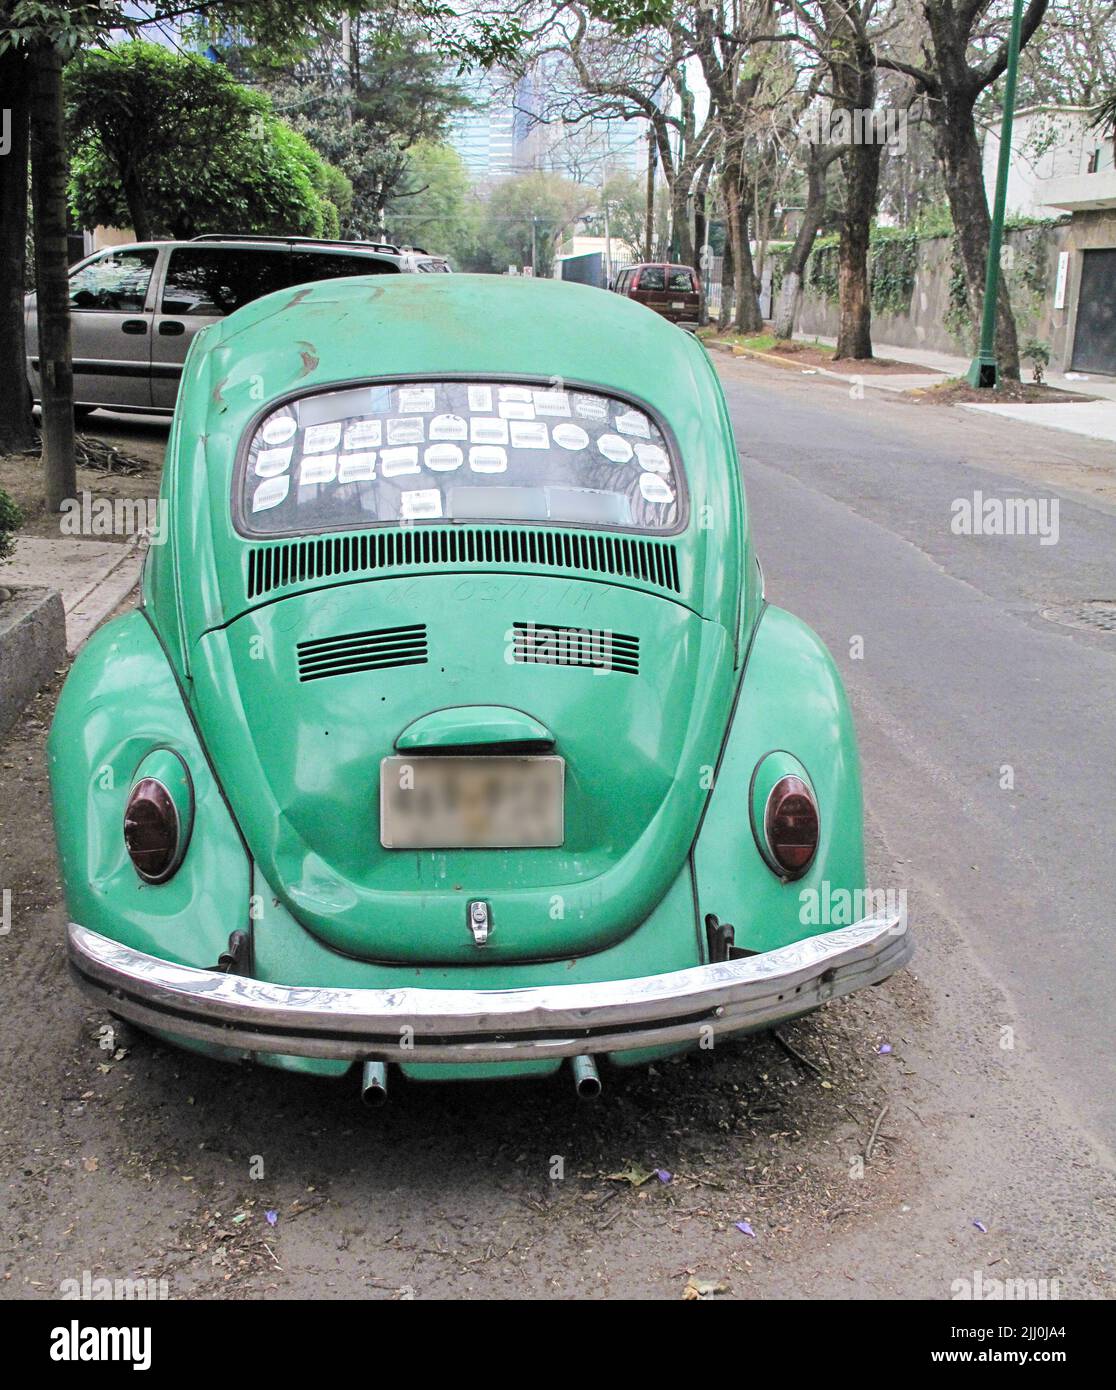 VW Beetle rear window obscured by stickers Stock Photo